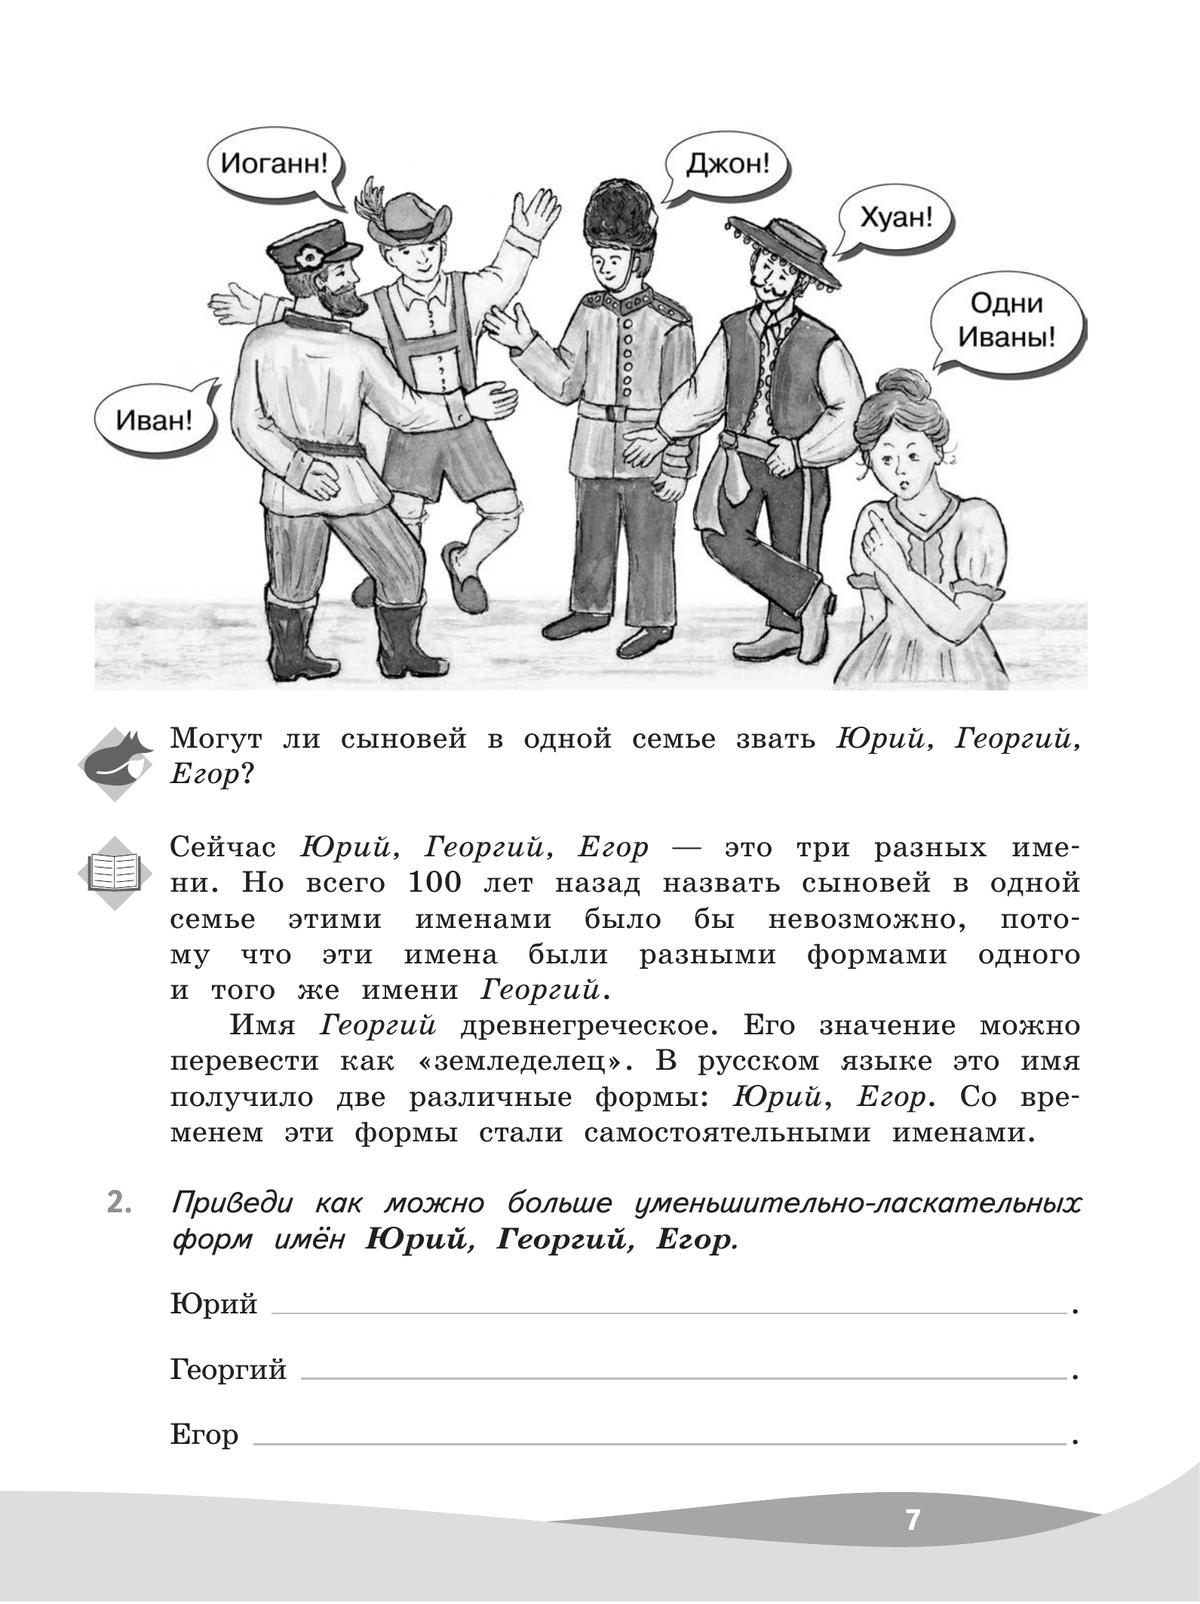 Русский язык. Познавательные истории с заданиями. 3 класс. Рабочая тетрадь 8